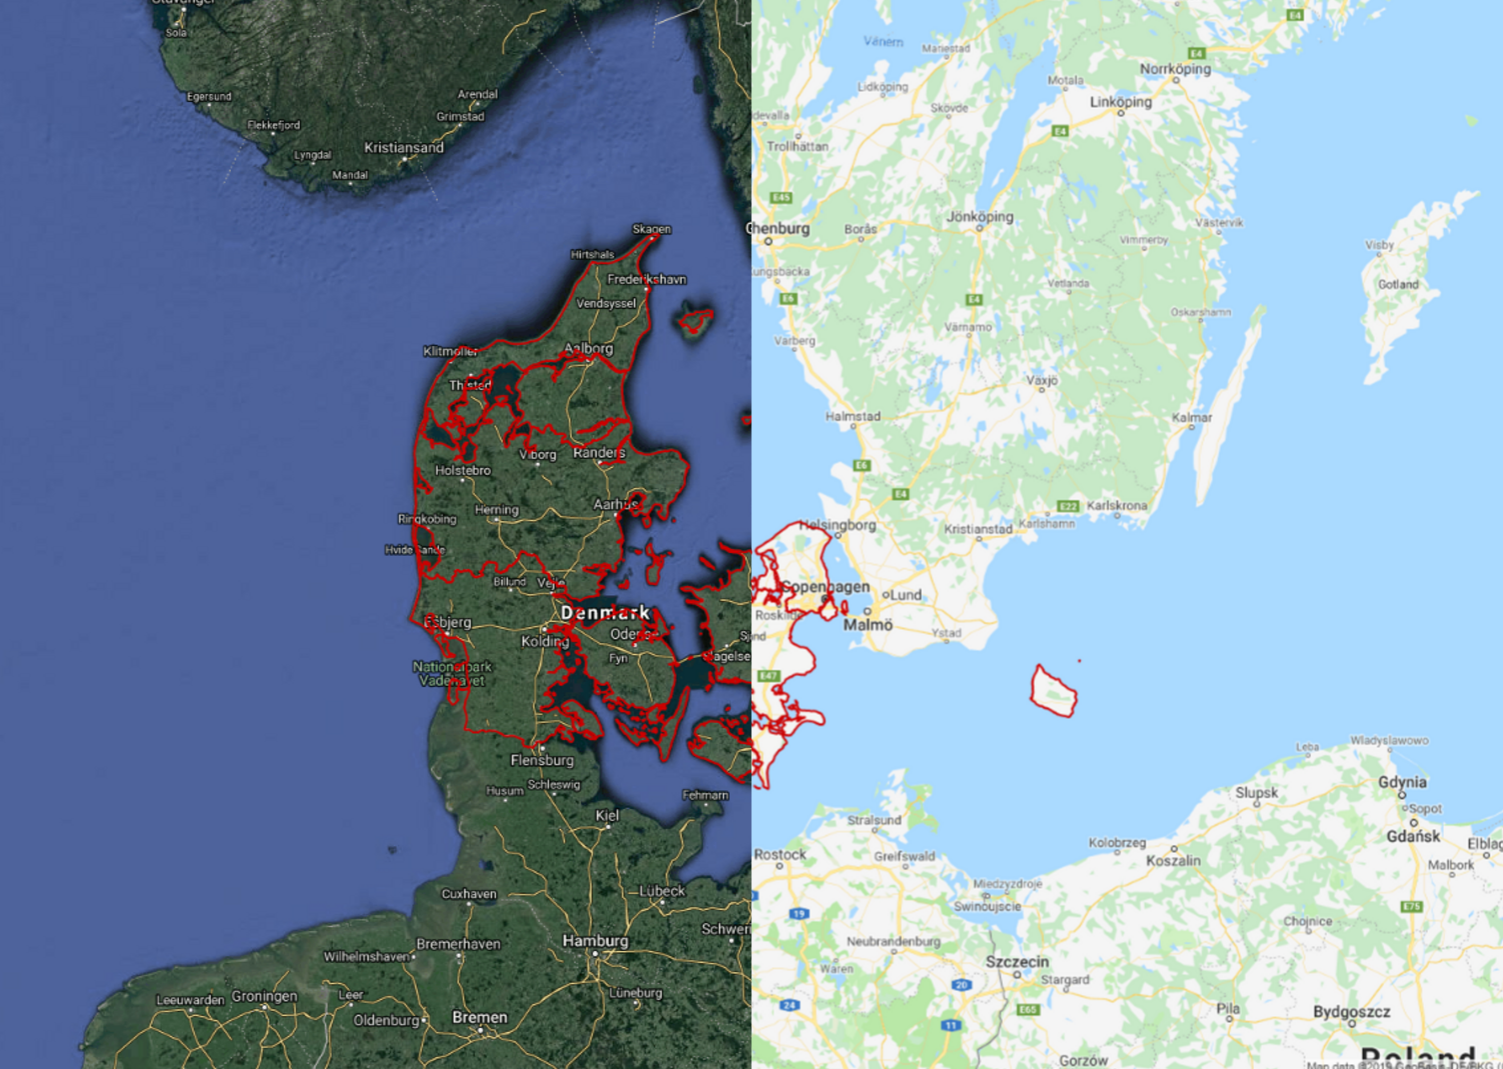 The Danish Regions